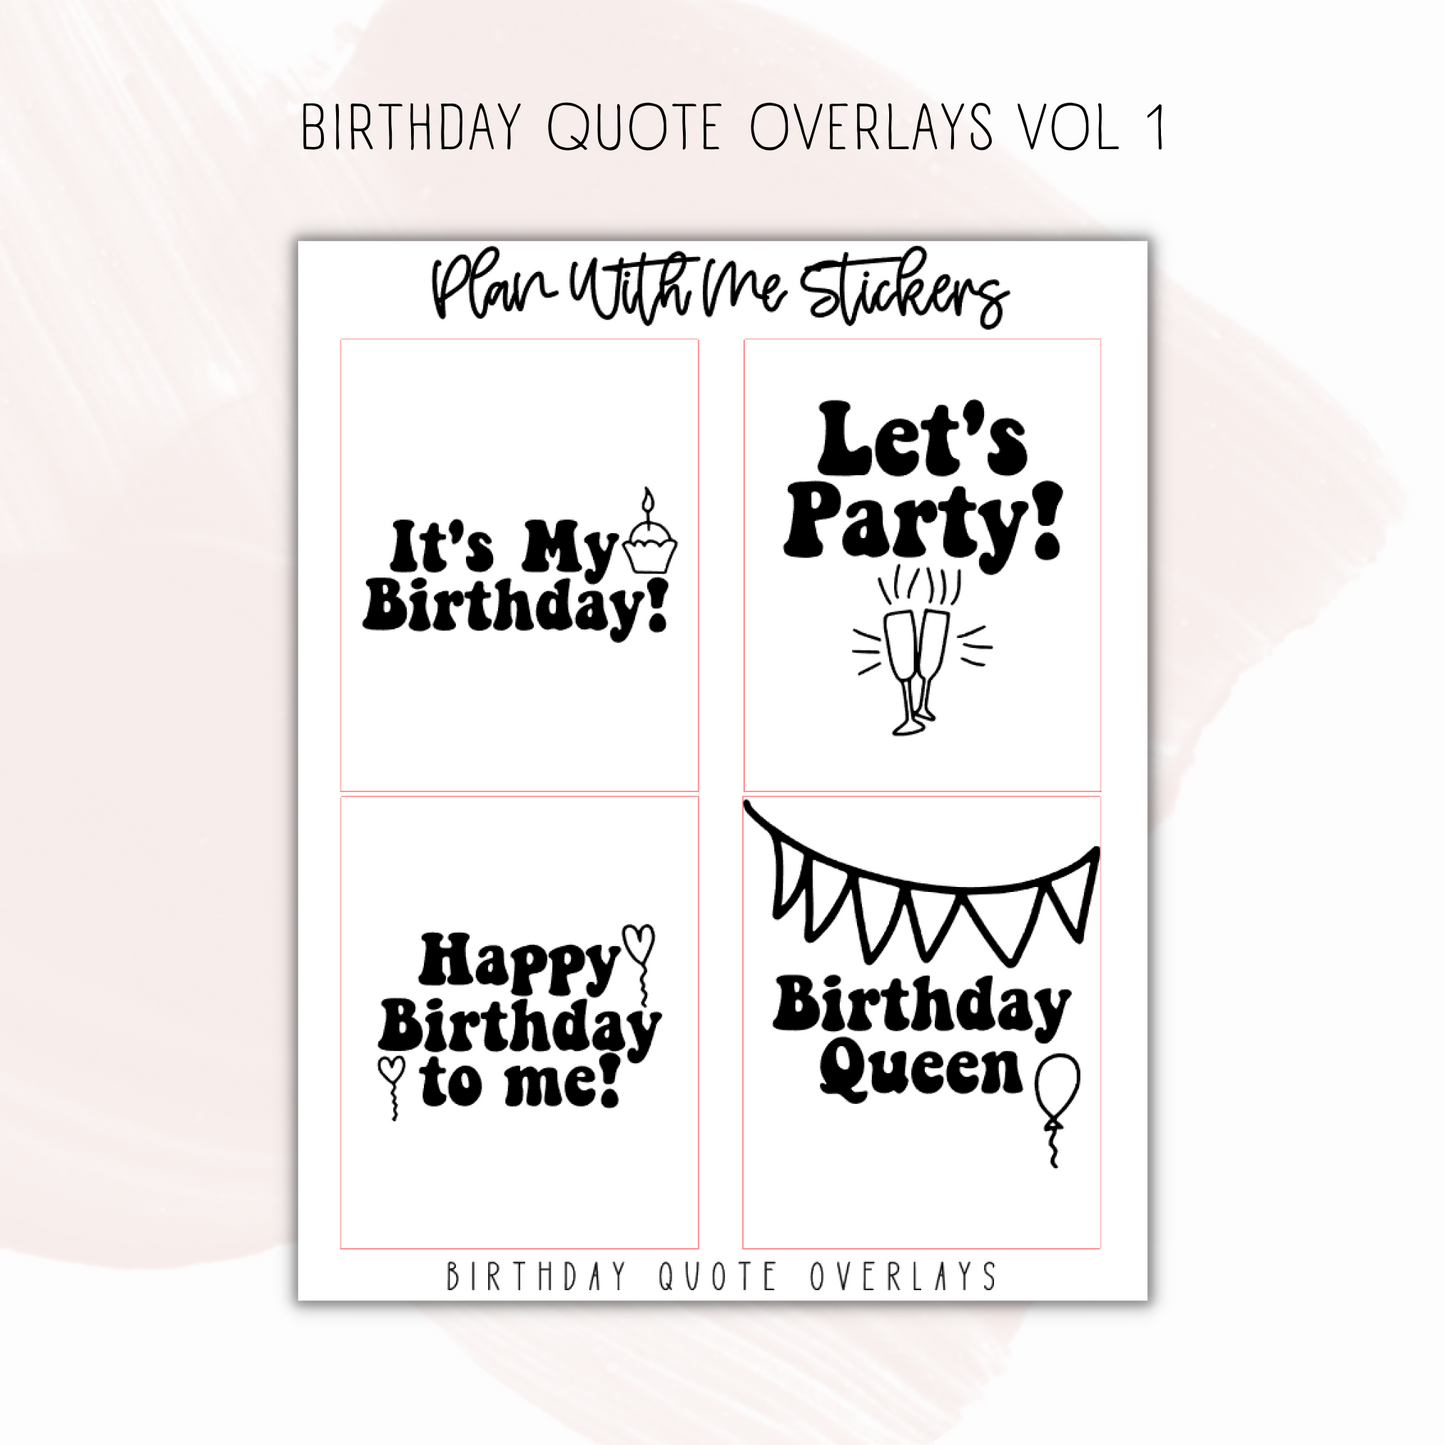 Birthday Quote Overlays Vol 1